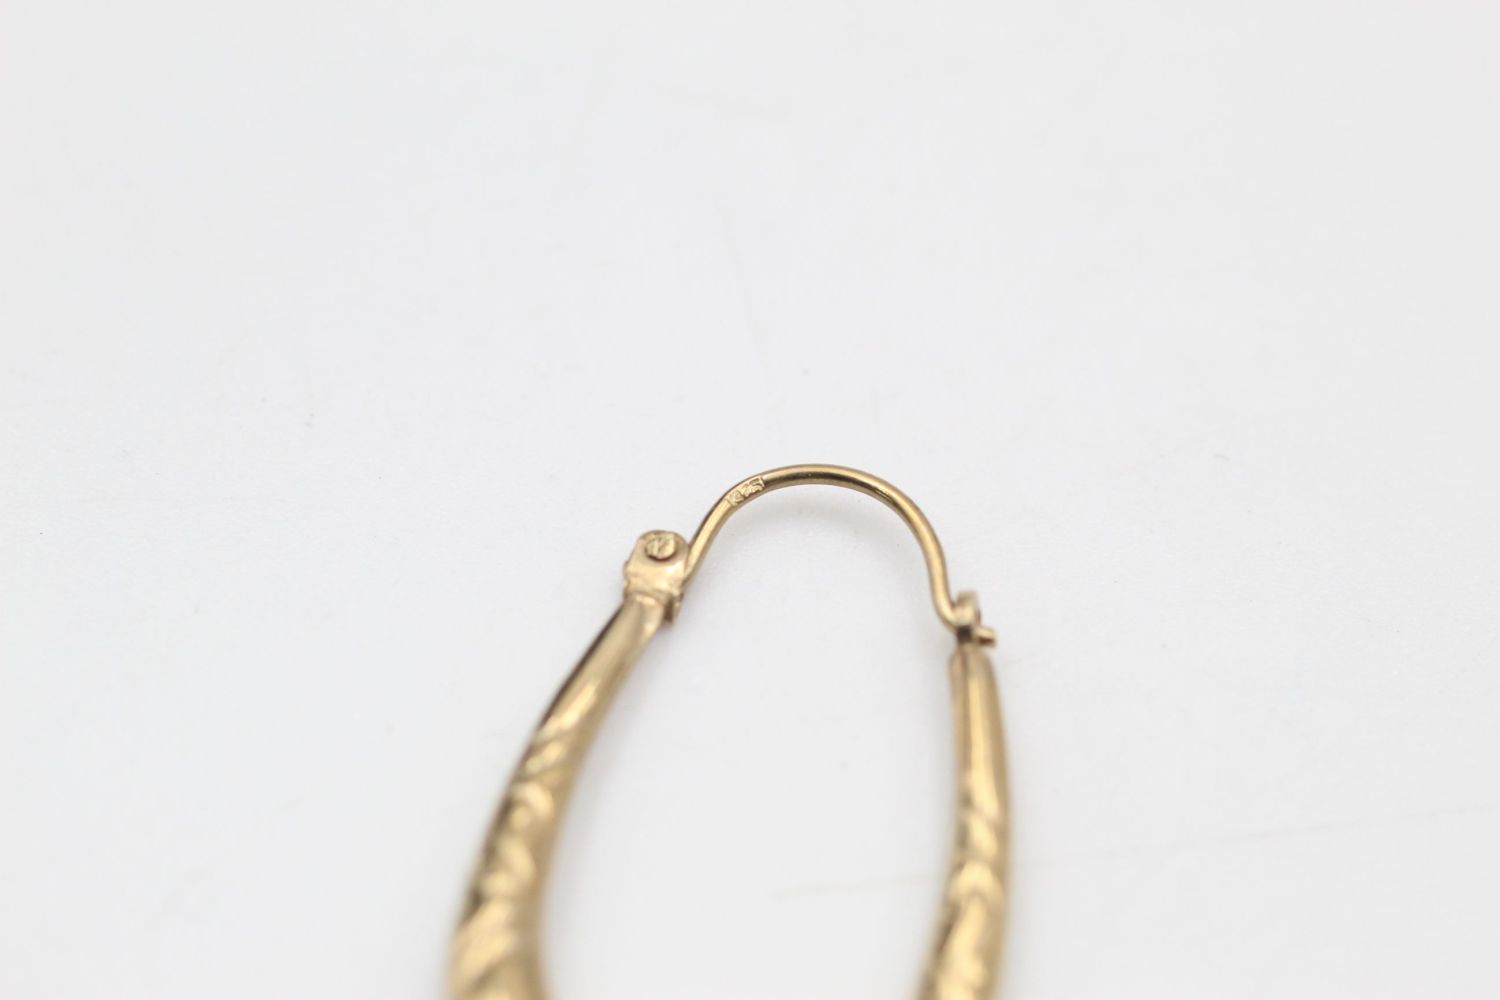 2 x 9ct Gold hoop earrings inc. engraved 1.9 grams gross - Image 7 of 7